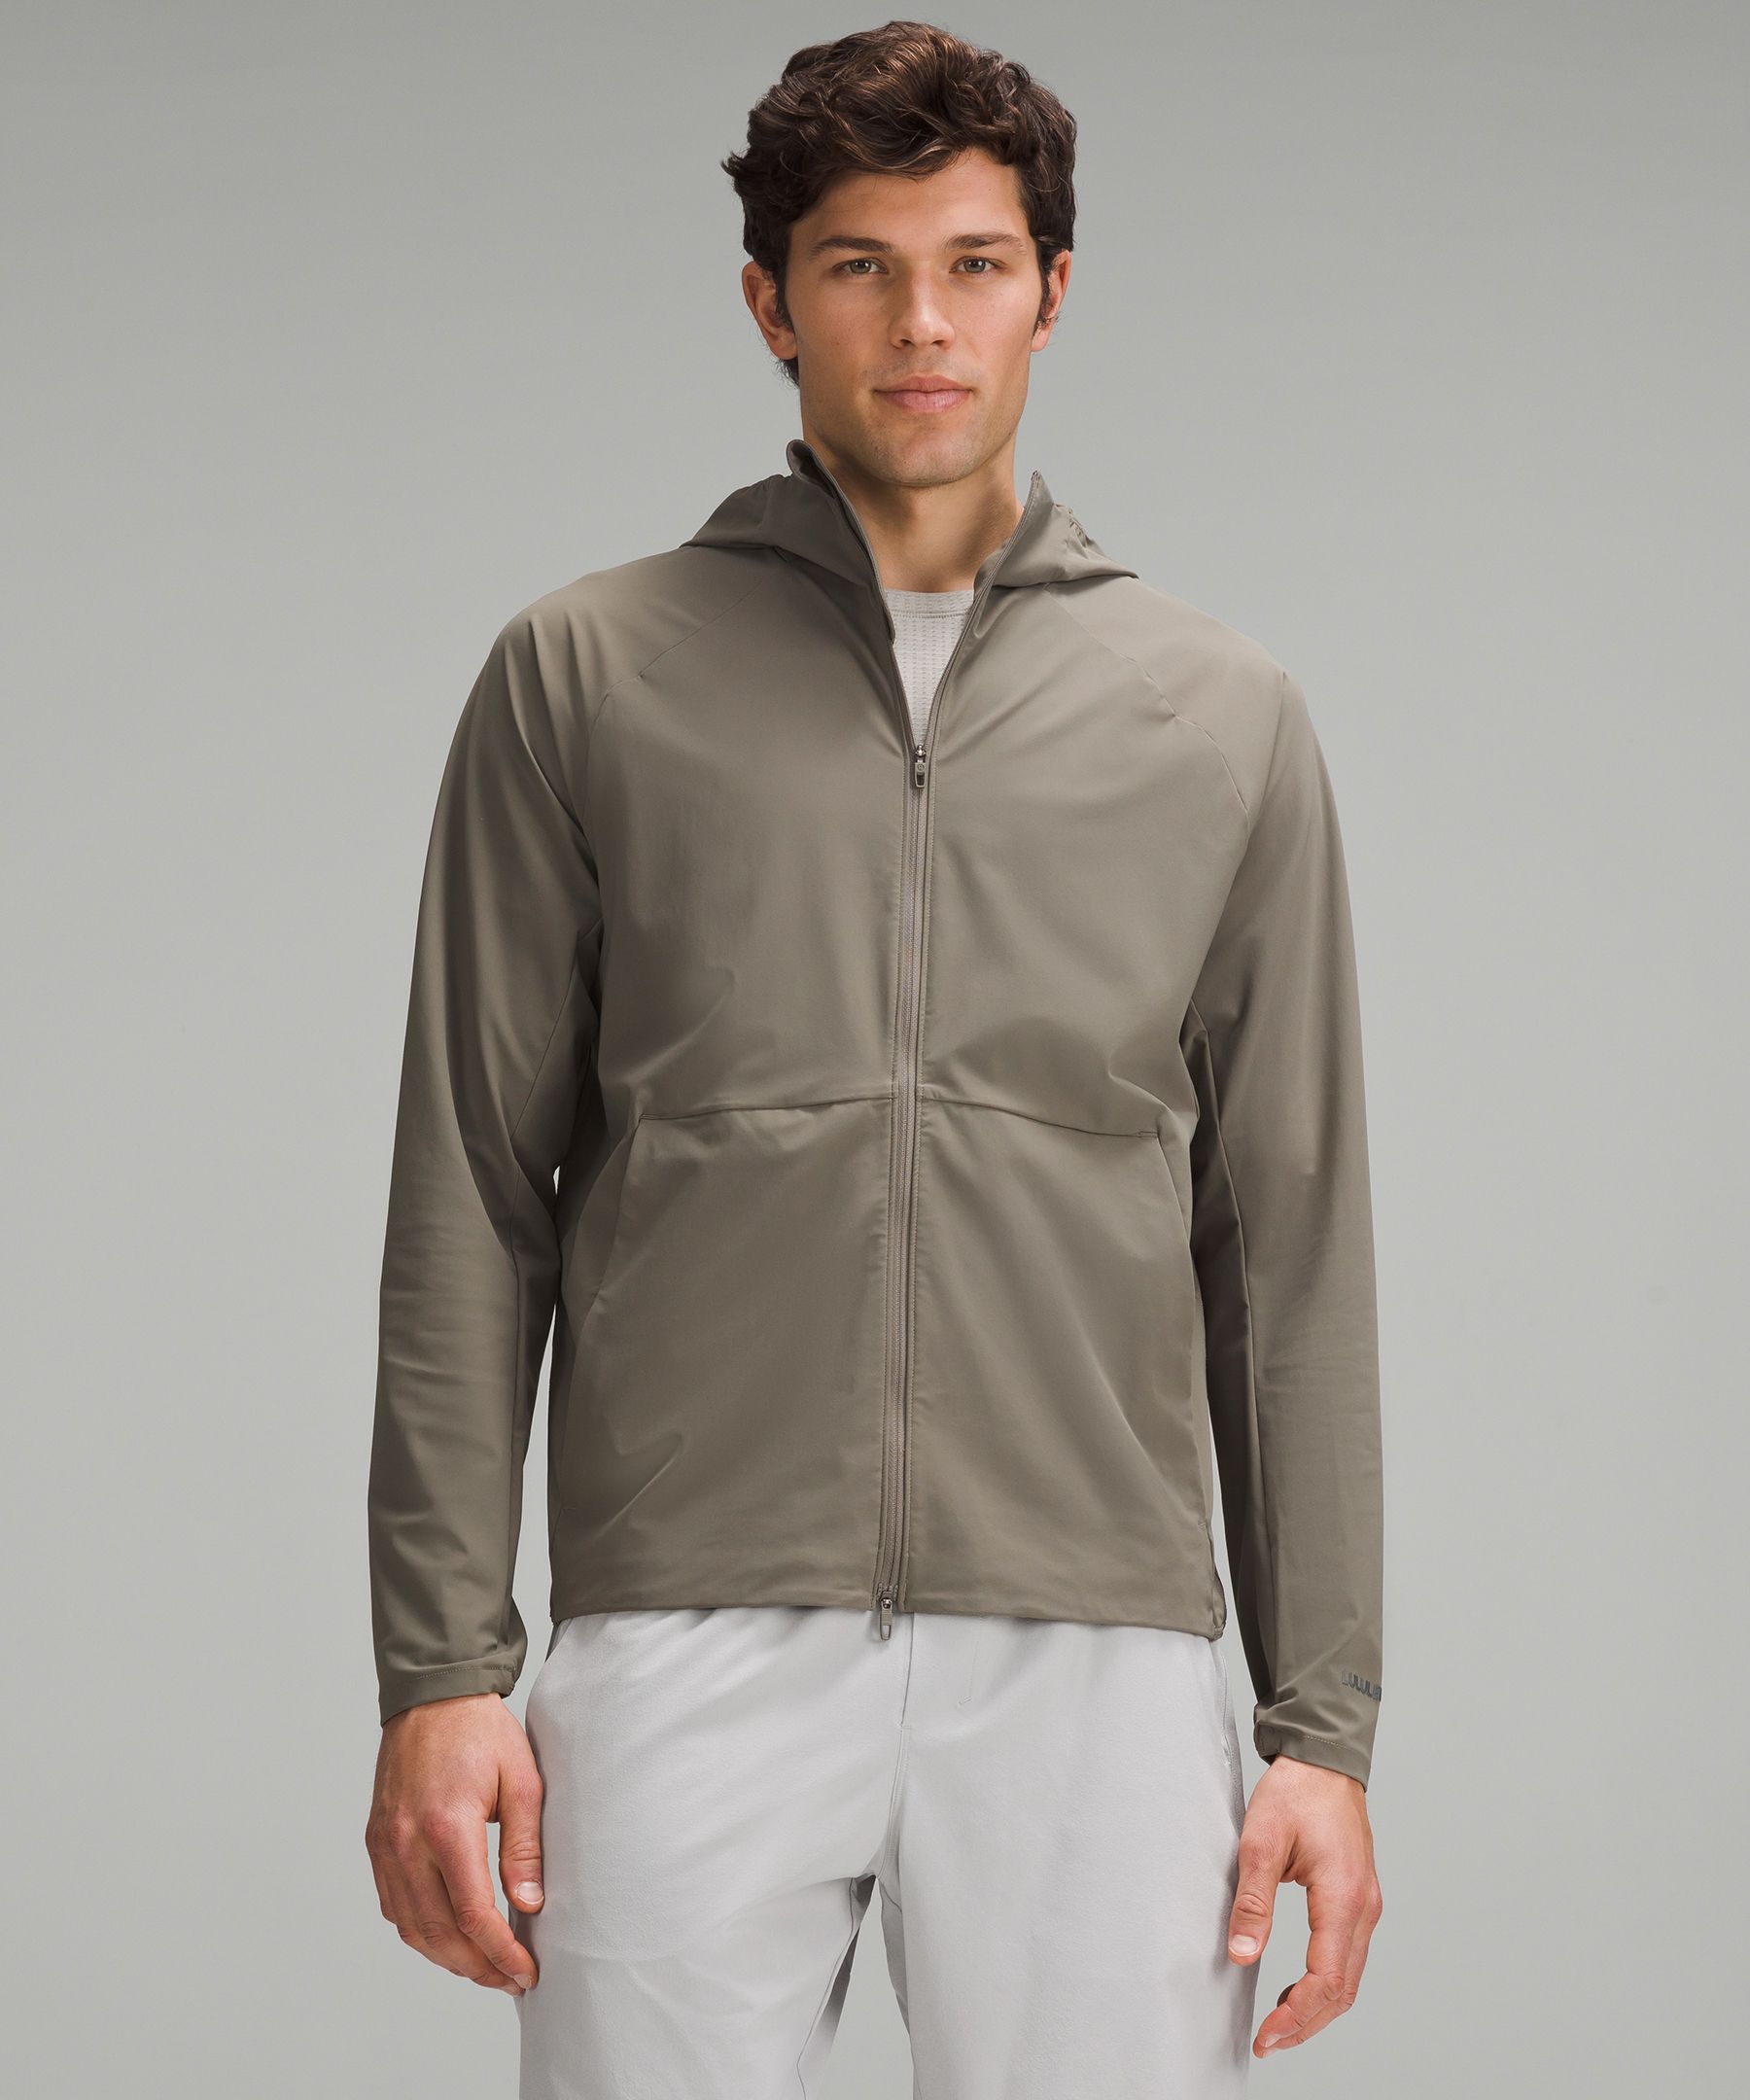 Pace Breaker Jacket | Men's Coats & Jackets